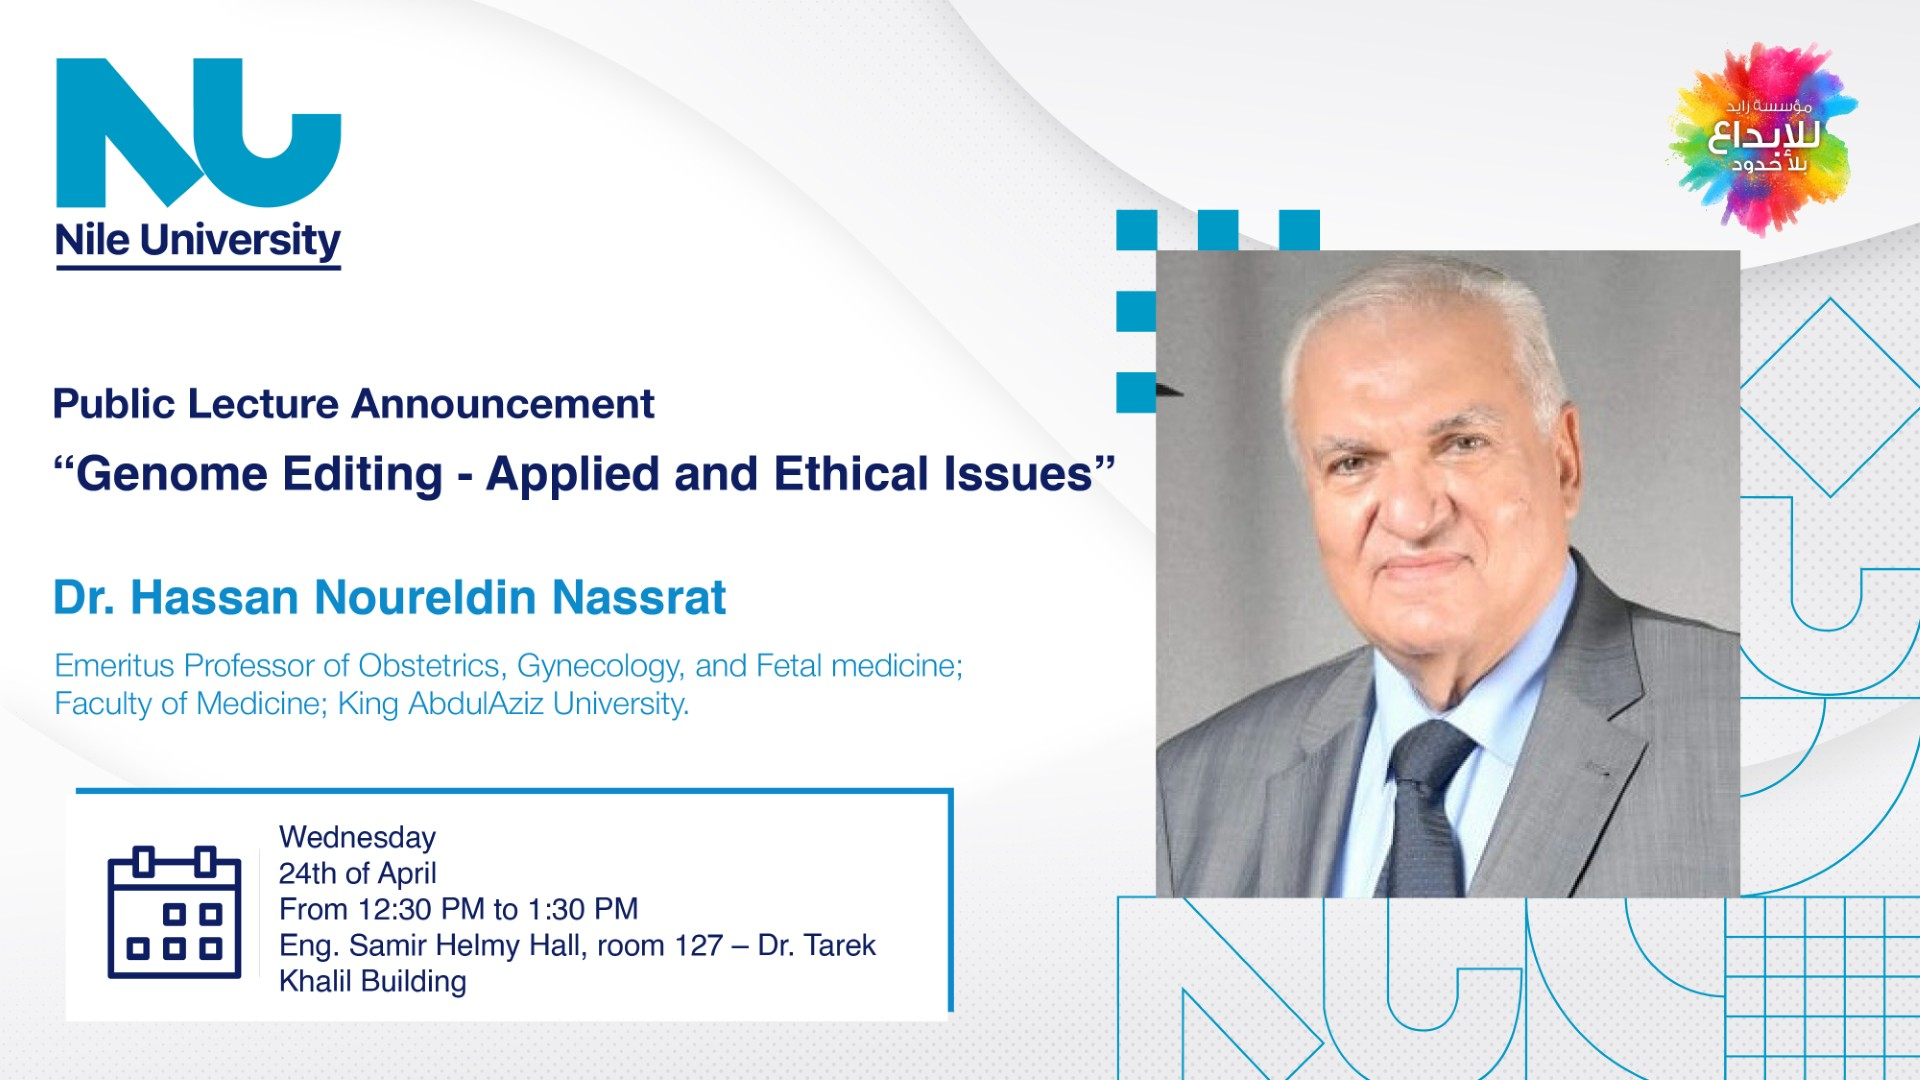 Dr. Hassan Noureldin Nassrat